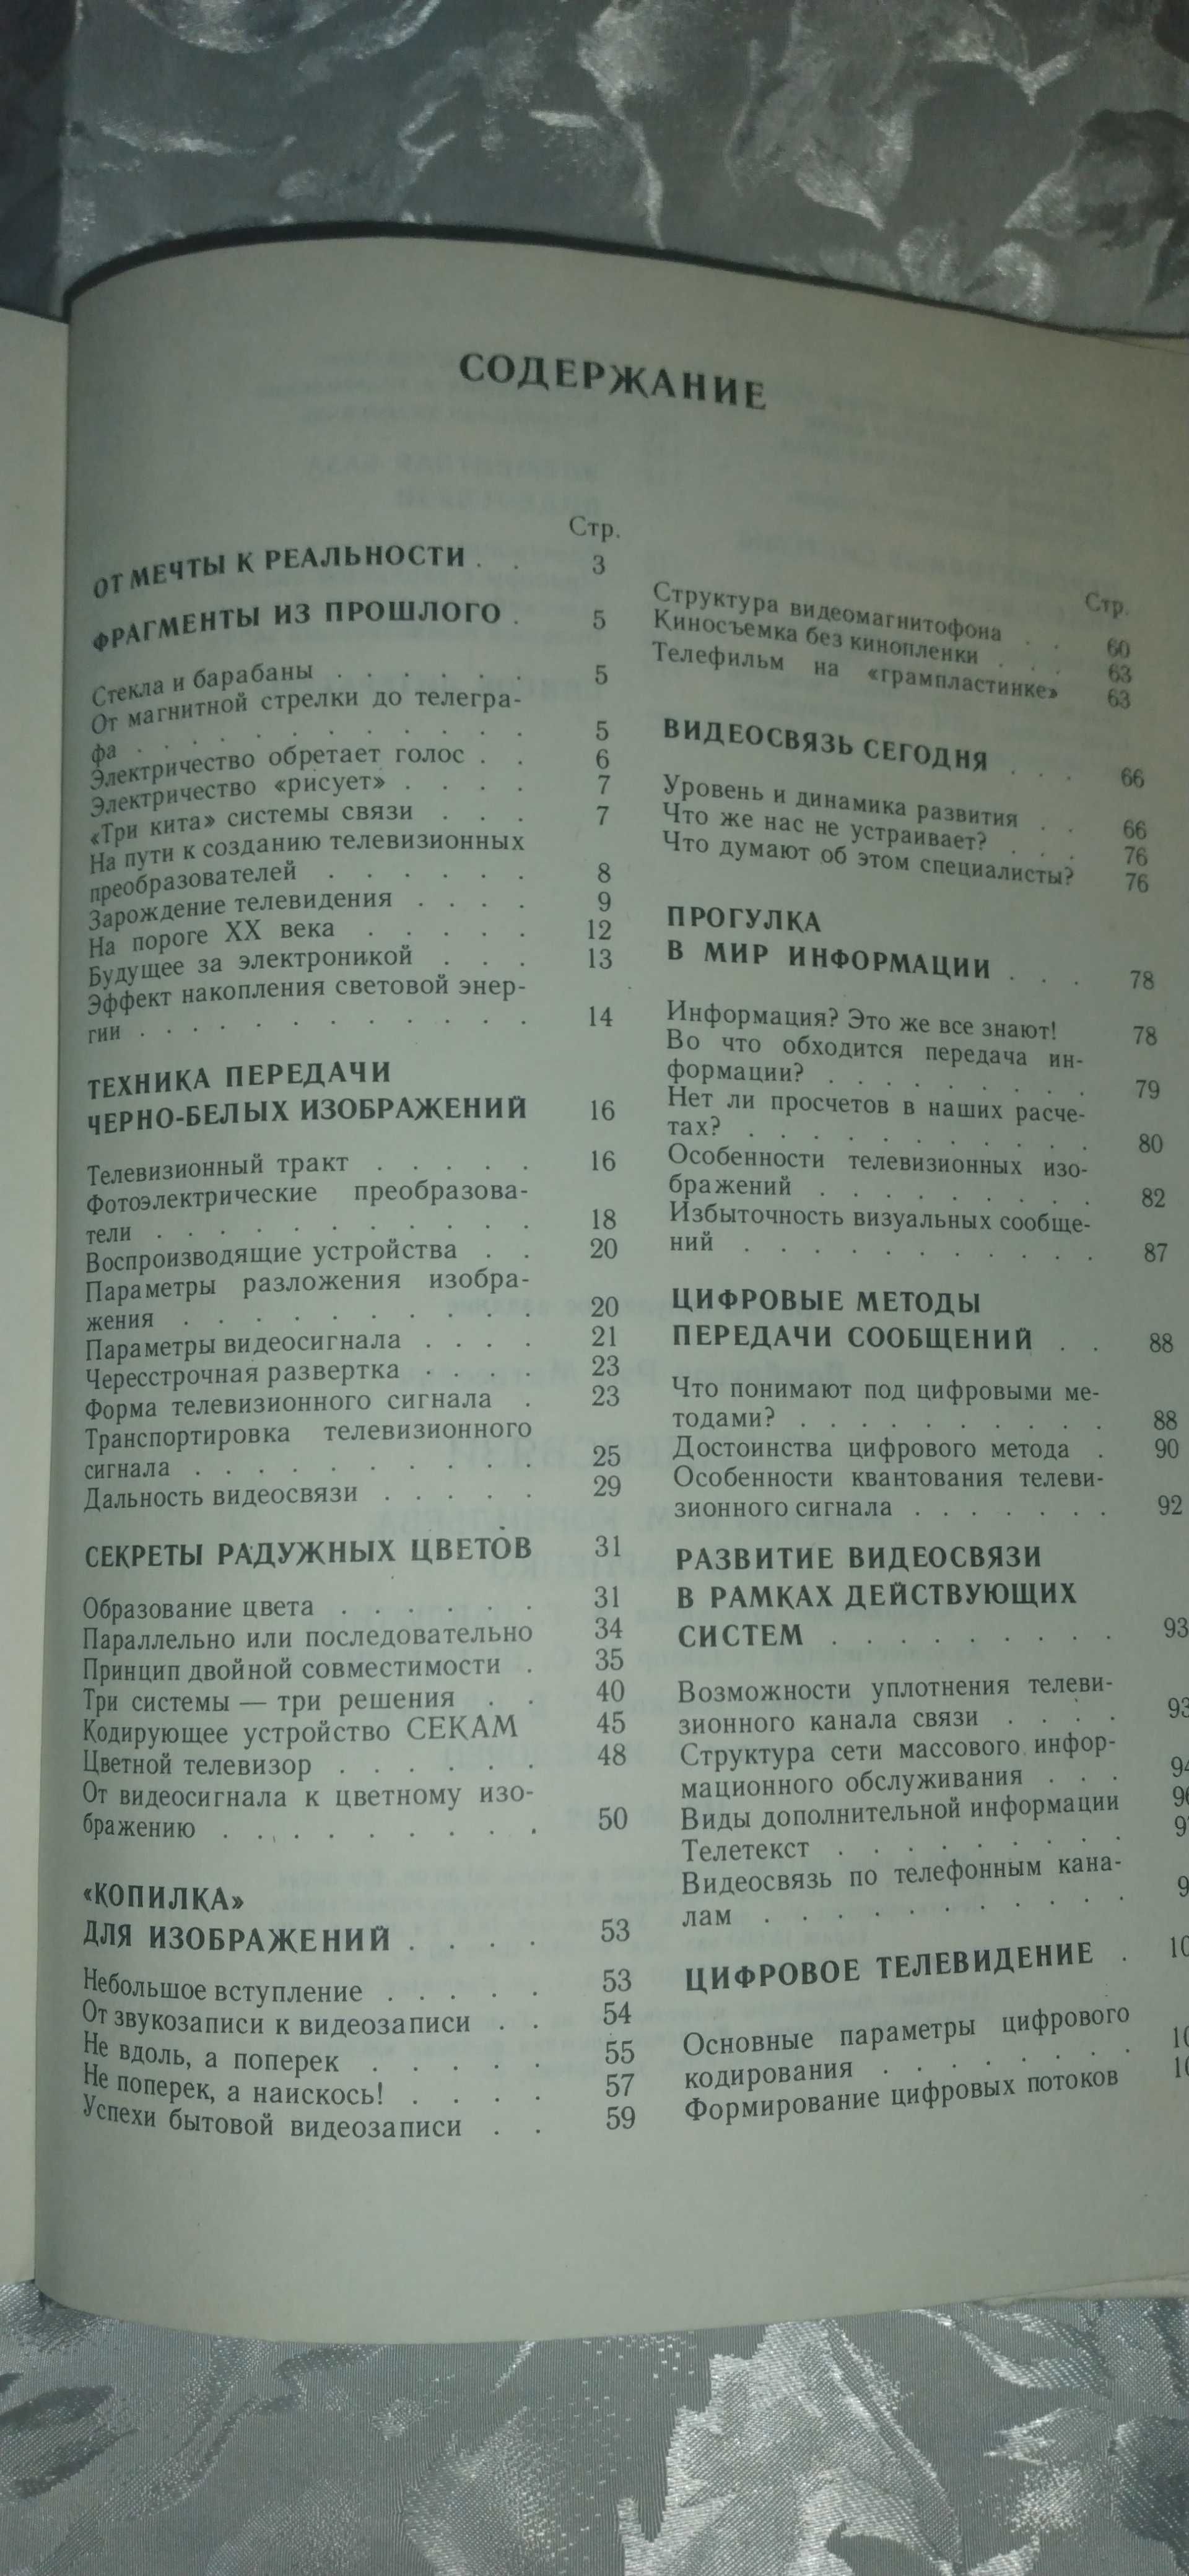 Научно-популярная издание "О видеосвязи", Киев, 1990 г.